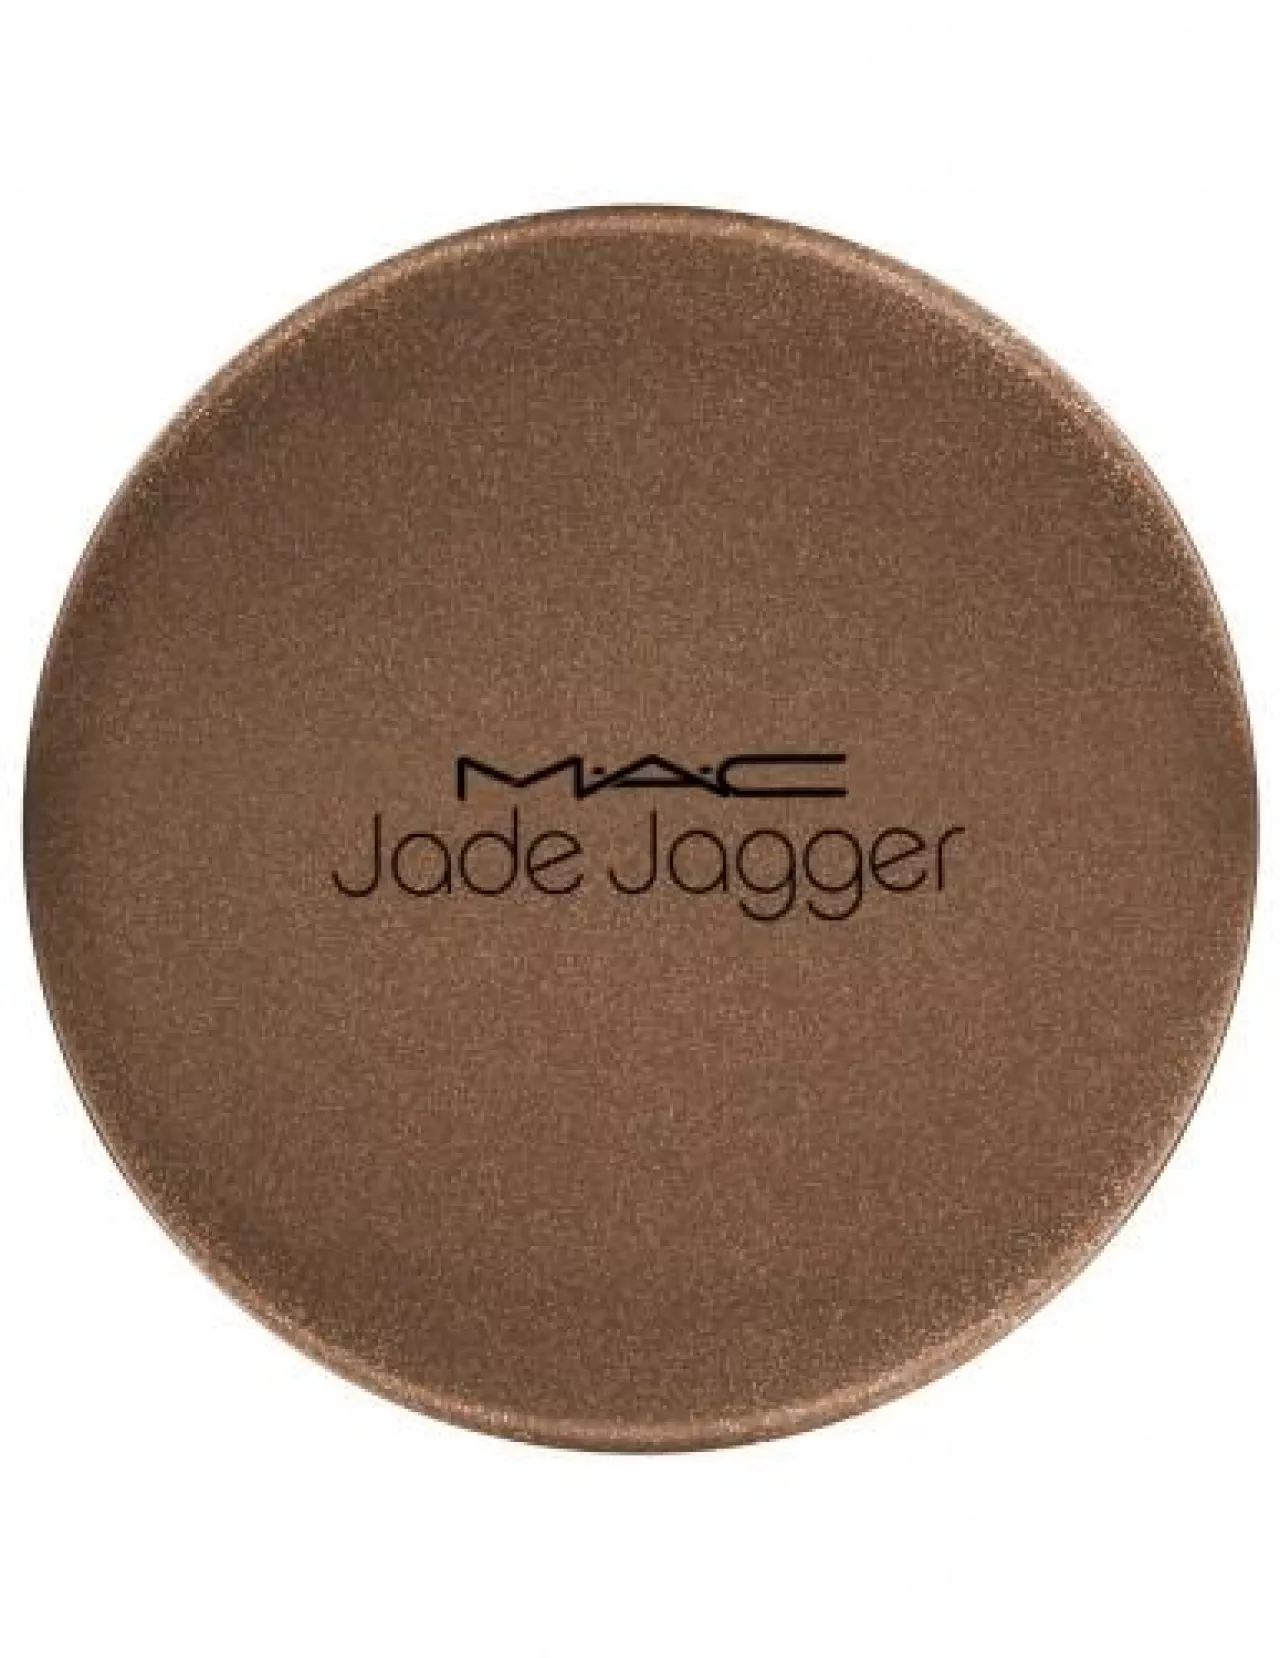 Jade Jagger zaprojektowała kolekcję kosmetyków dla MAC Cosmetics (Anna Zawadzka)